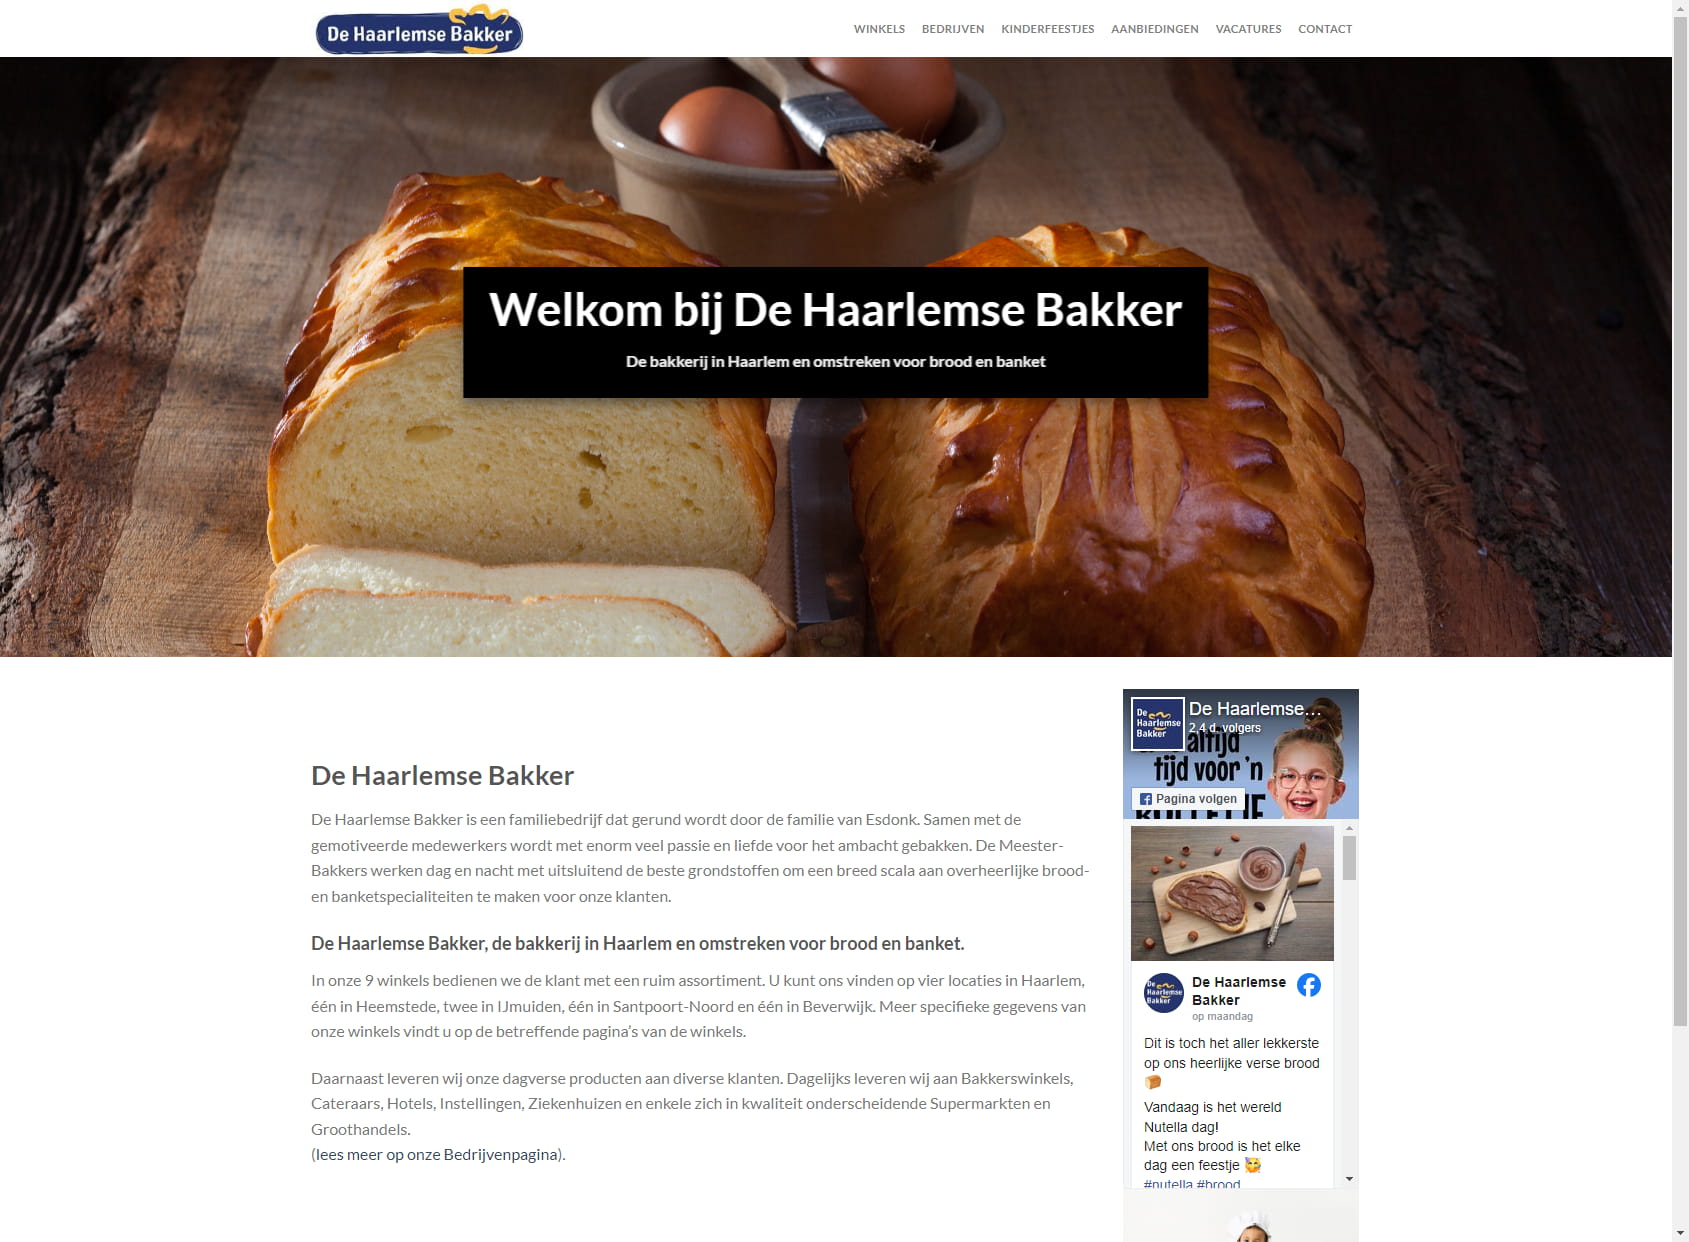 De Haarlemse Bakker